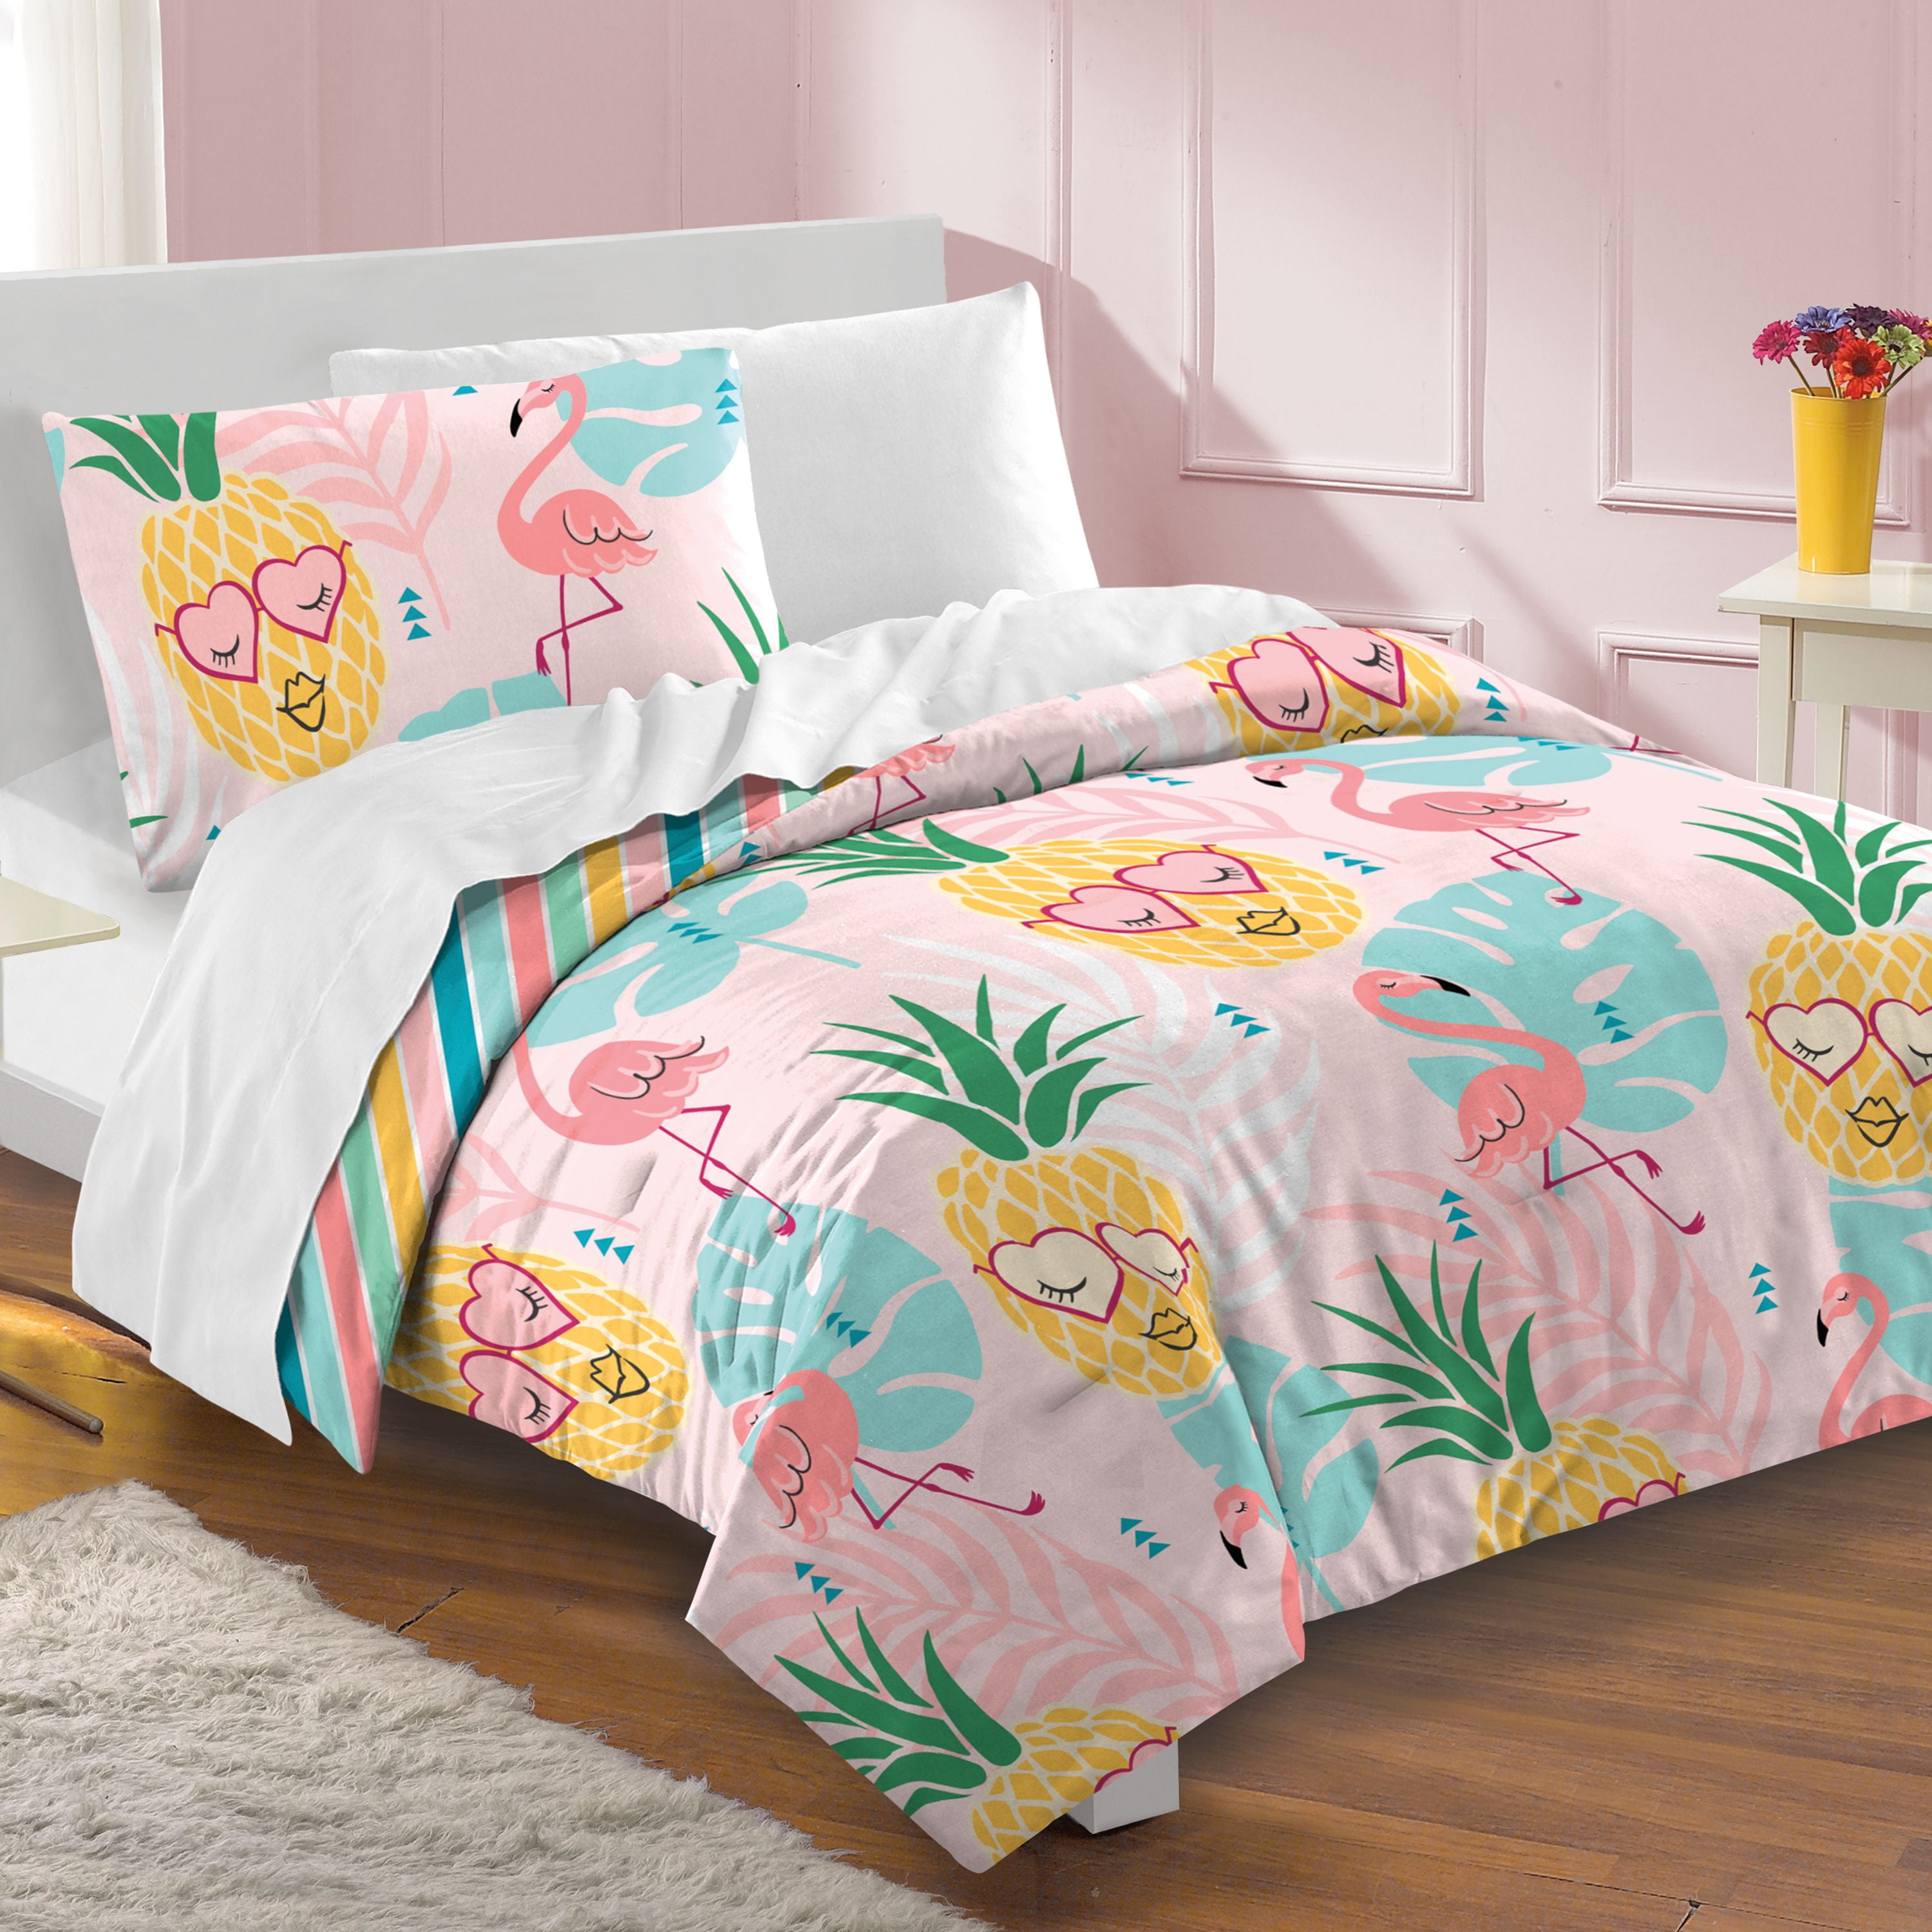 Dream Factory Pineapple Twin Comforter Set Pink - Walmart.com